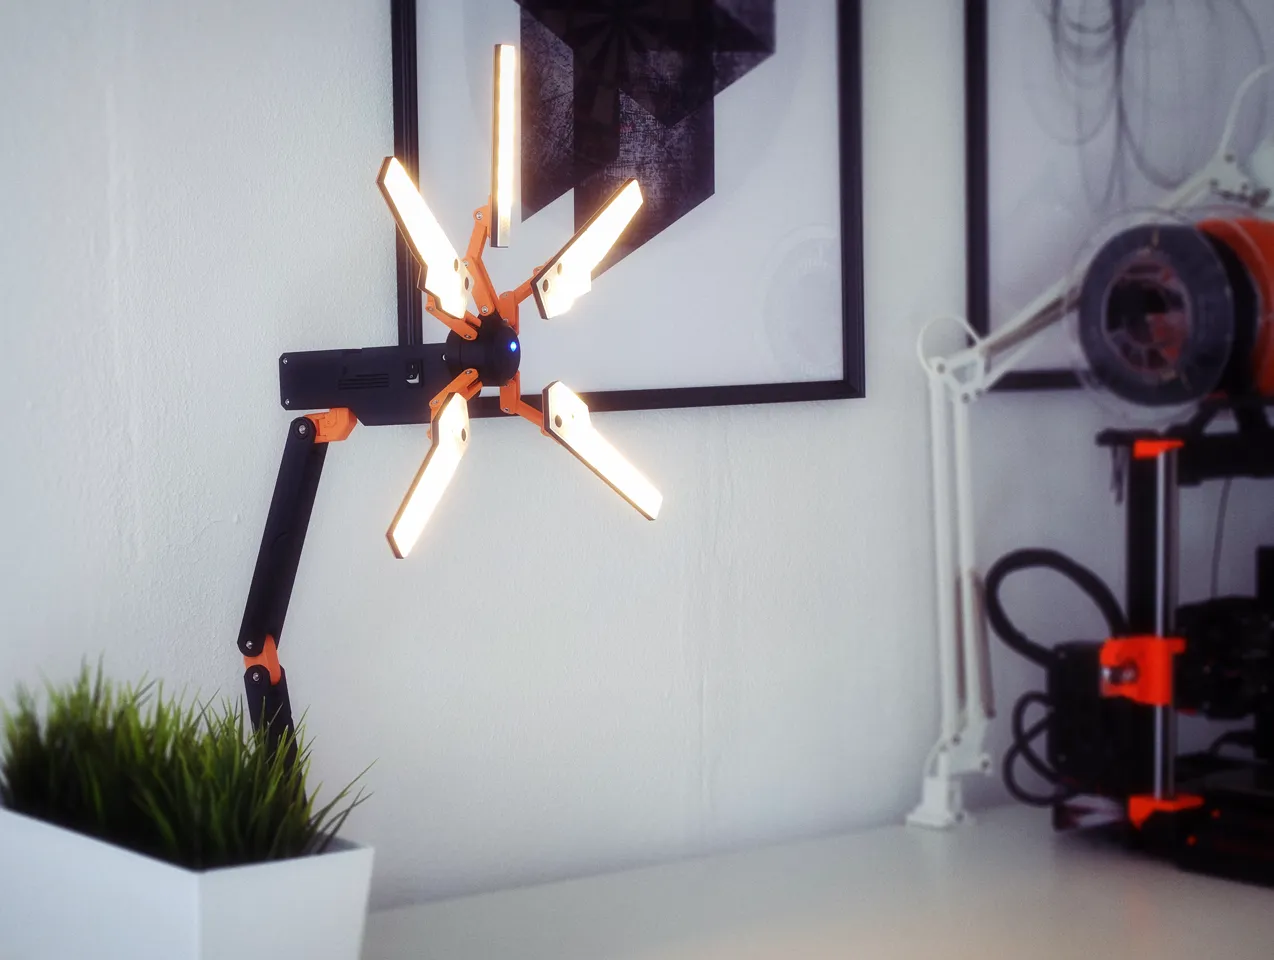 Desk Stranding - The Death Stranding Desk Lamp by Nils Kal 